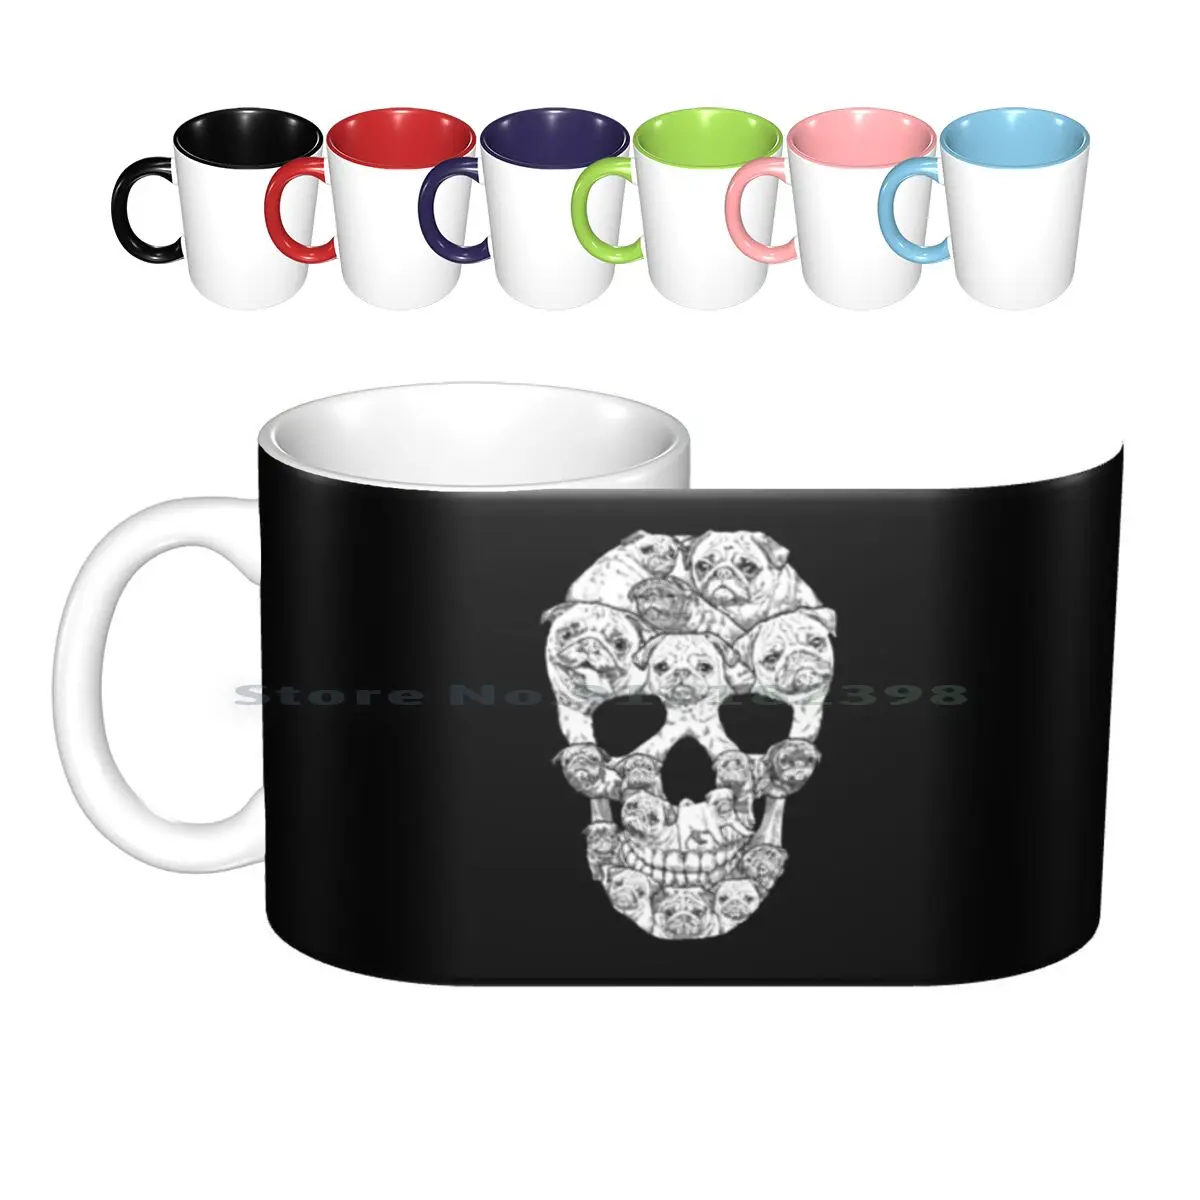 Pug Skull Ceramic Mugs Coffee Cups Milk Tea Mug Pugs Pug Dogs Dog Skull Halloween Animals Cute Cool Dark Creative Trending